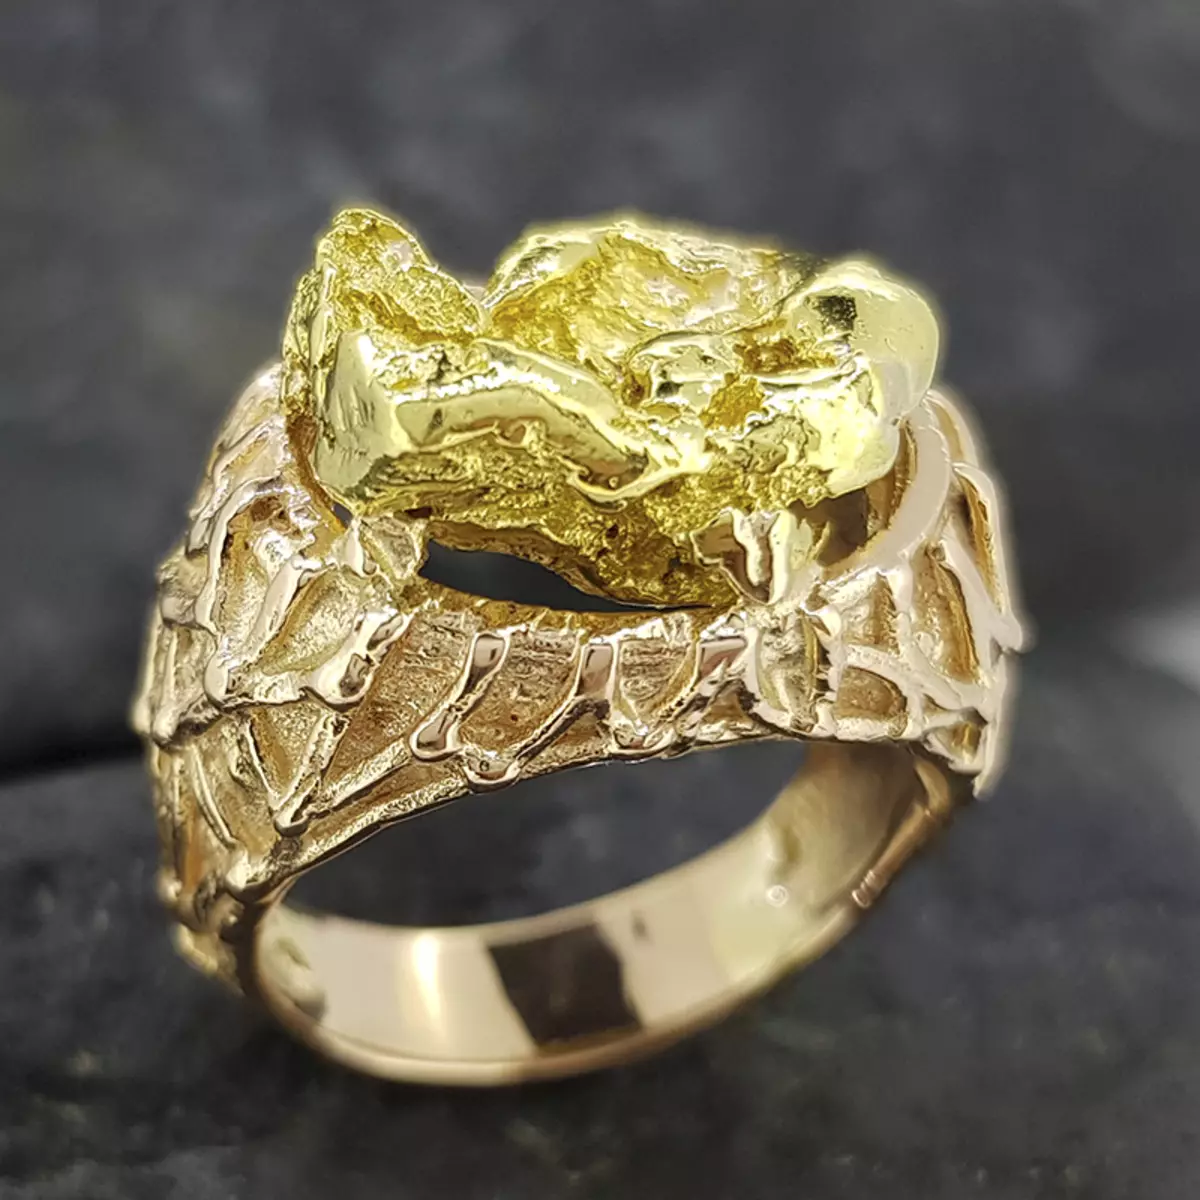 Кольцо с золотым самородком